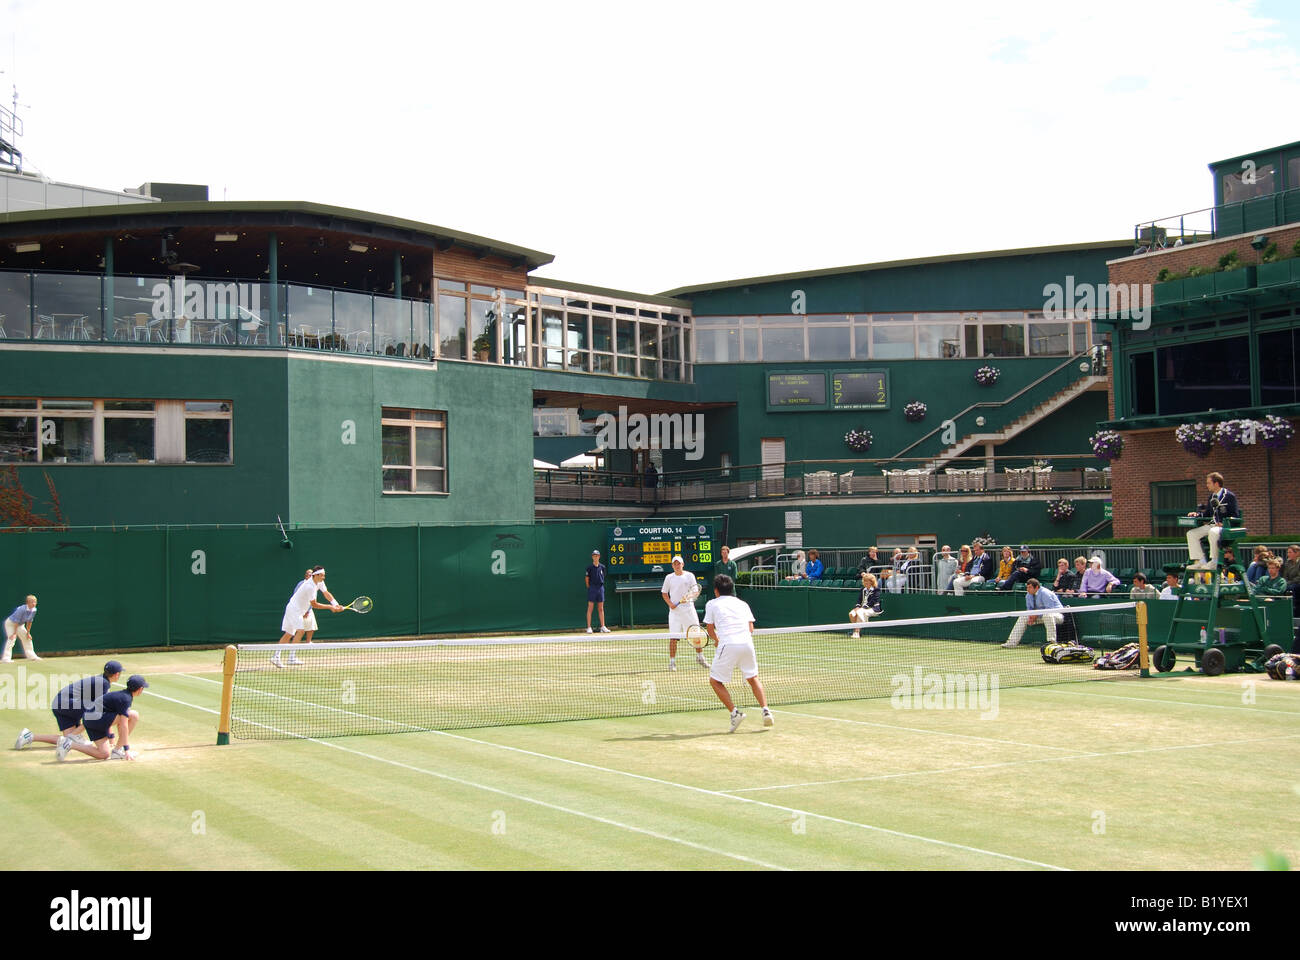 Corte al aire libre, los campeonatos de Wimbledon, Merton Borough, Greater London, England, Reino Unido Foto de stock